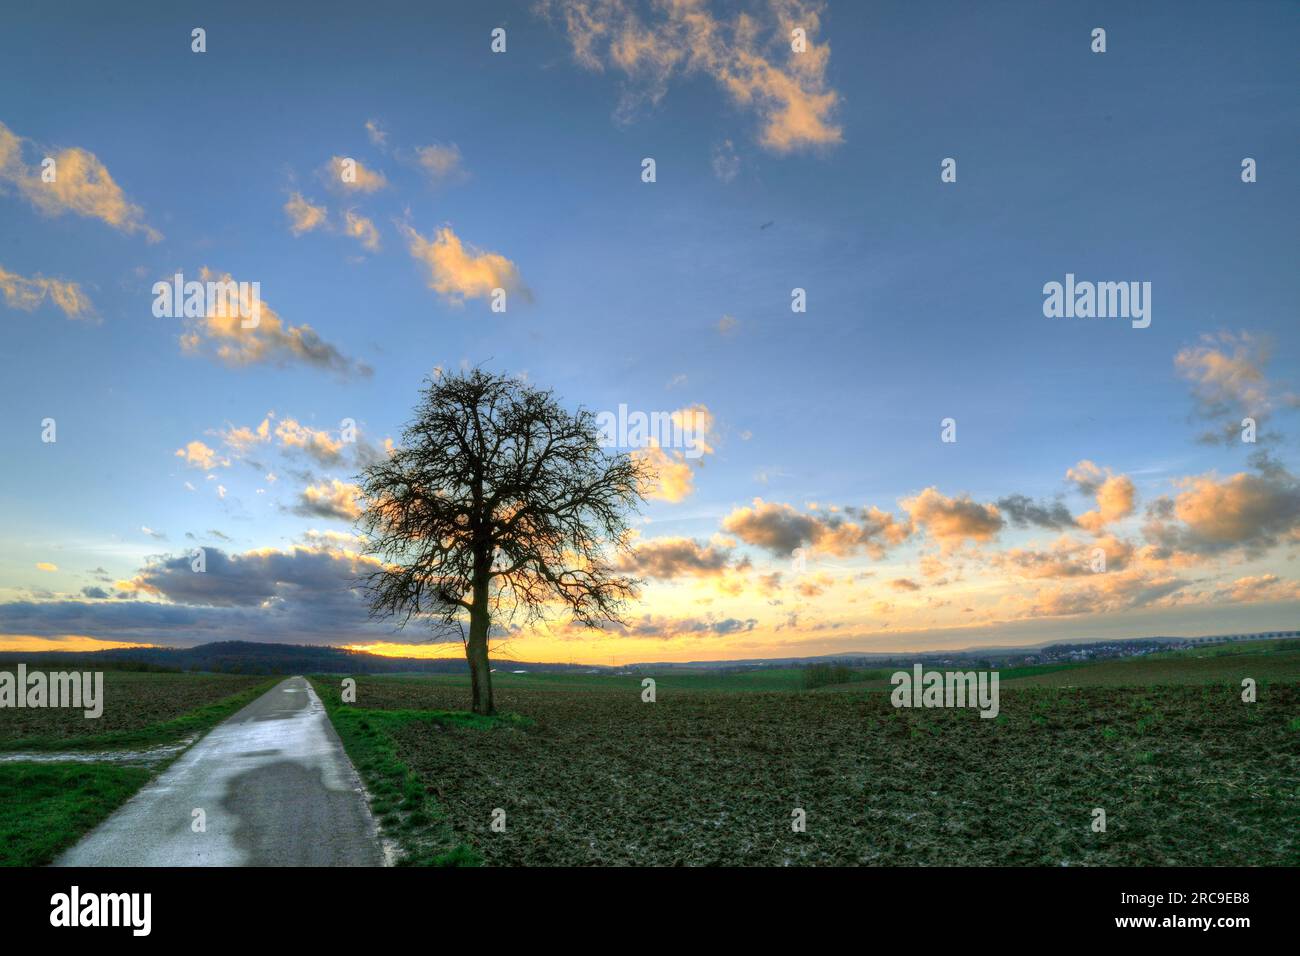 Baum im Sonnenuntergang bei Schwaigern im Kraichgau, Landkreis Heilbronn, Baden-Württemberg; Süddeutschland, Deutschland, Europa. Stock Photo